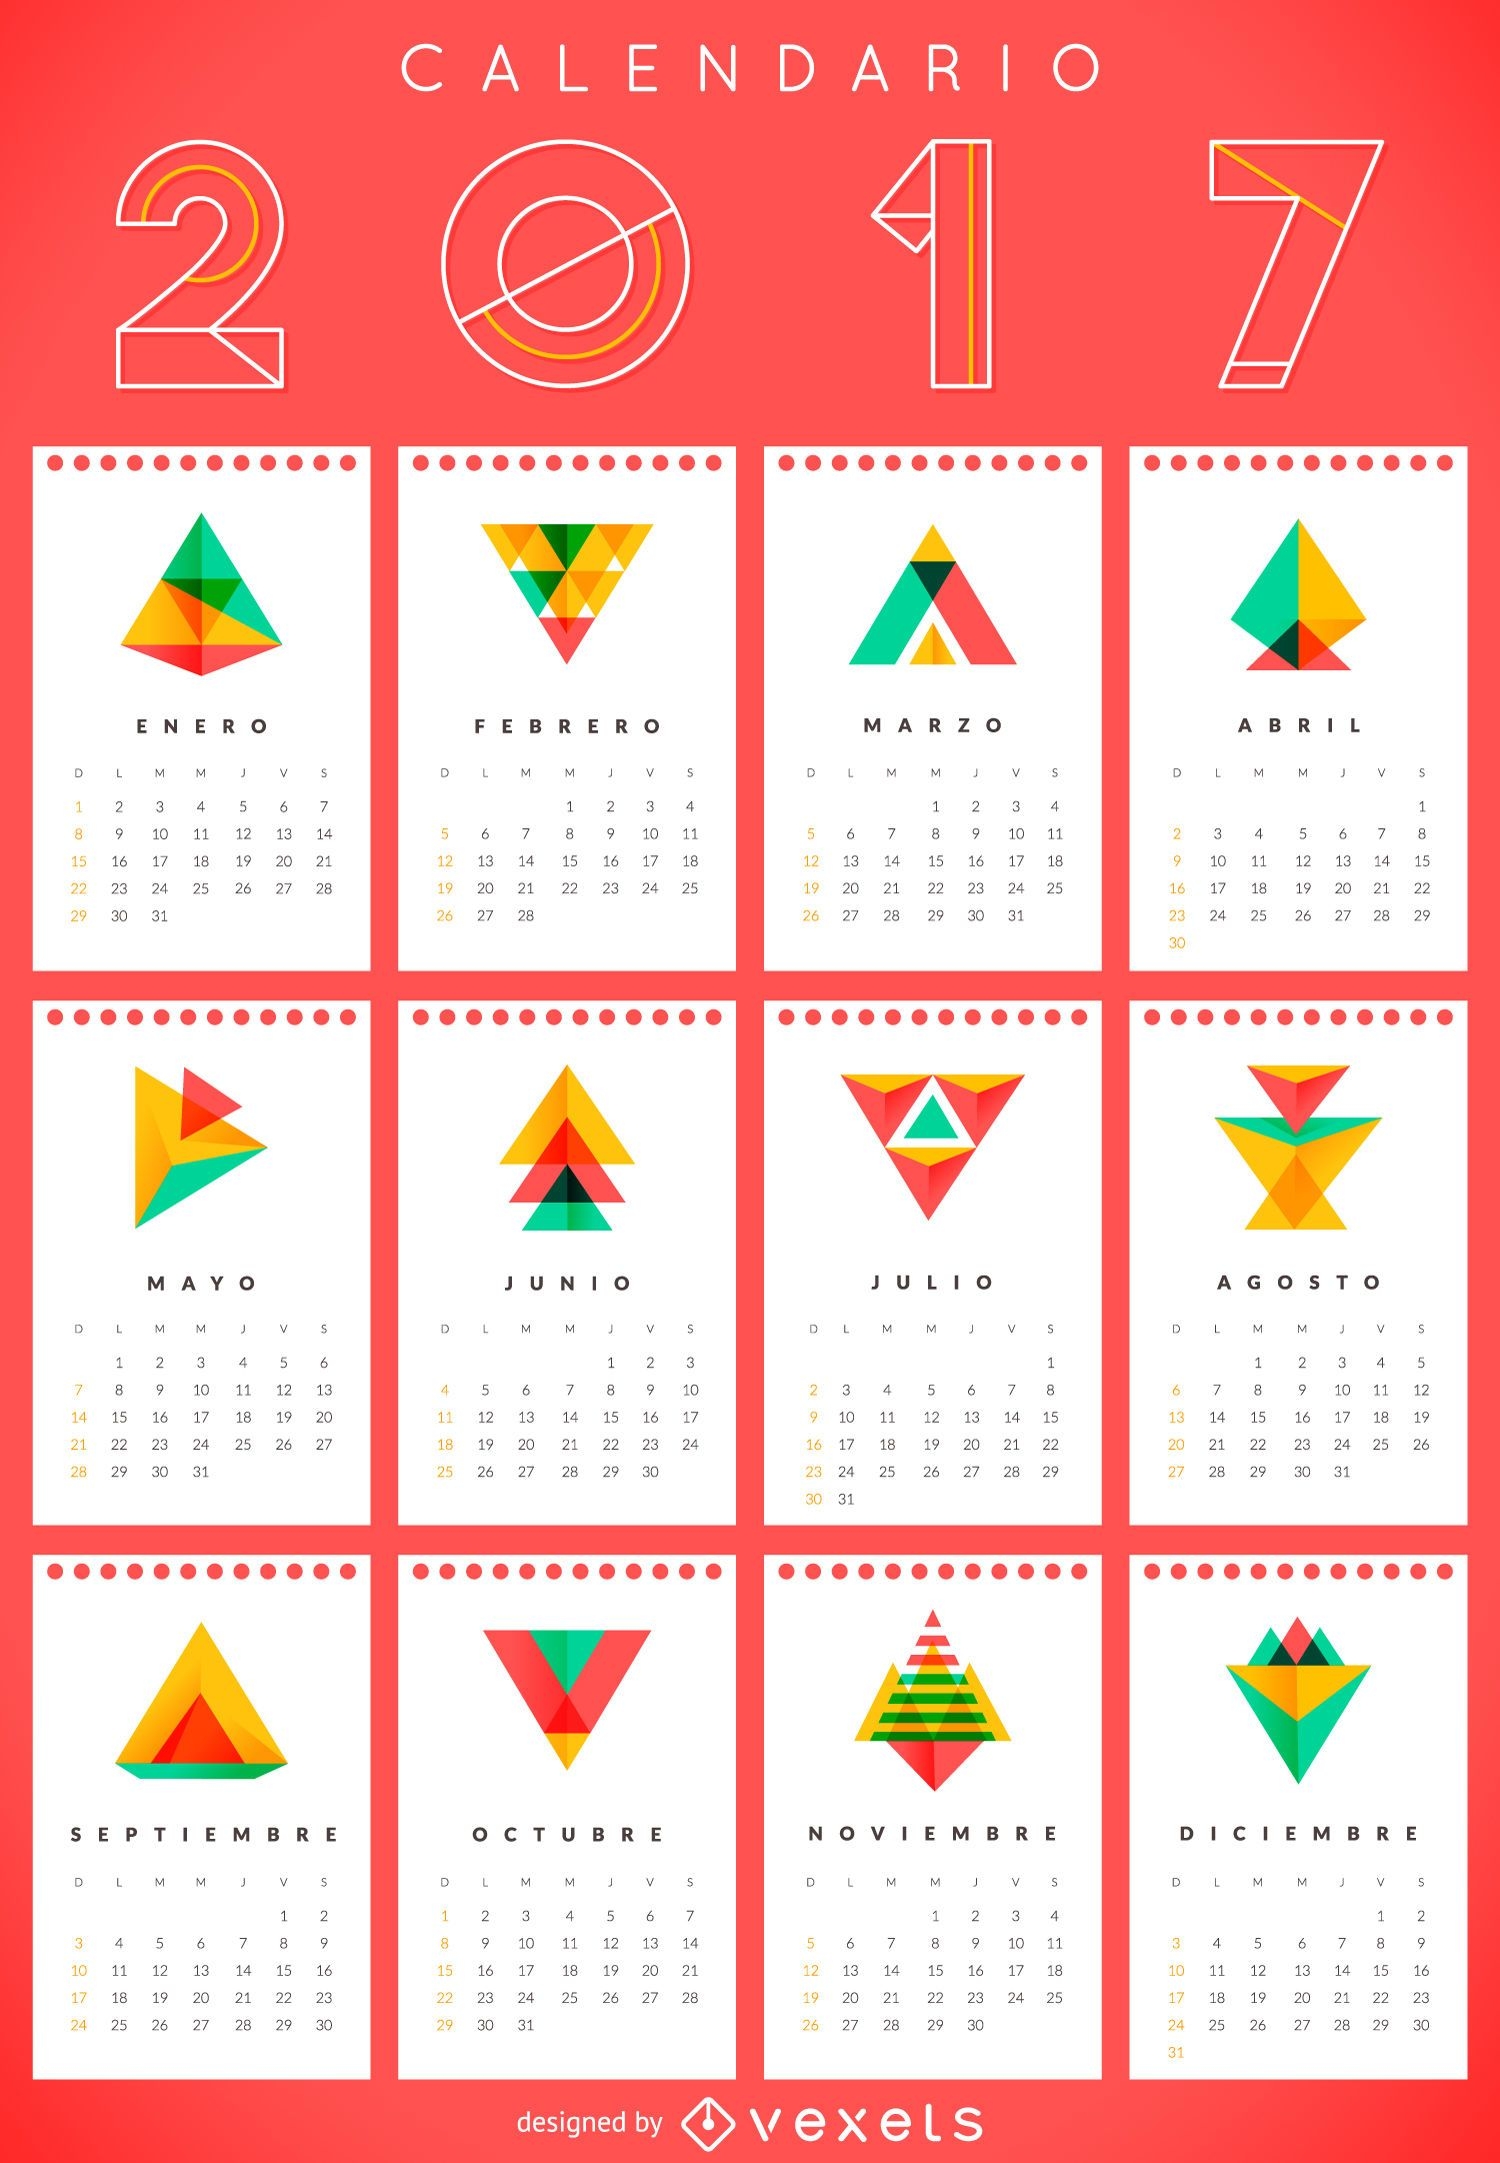 2017 geometric calendar in Spanish